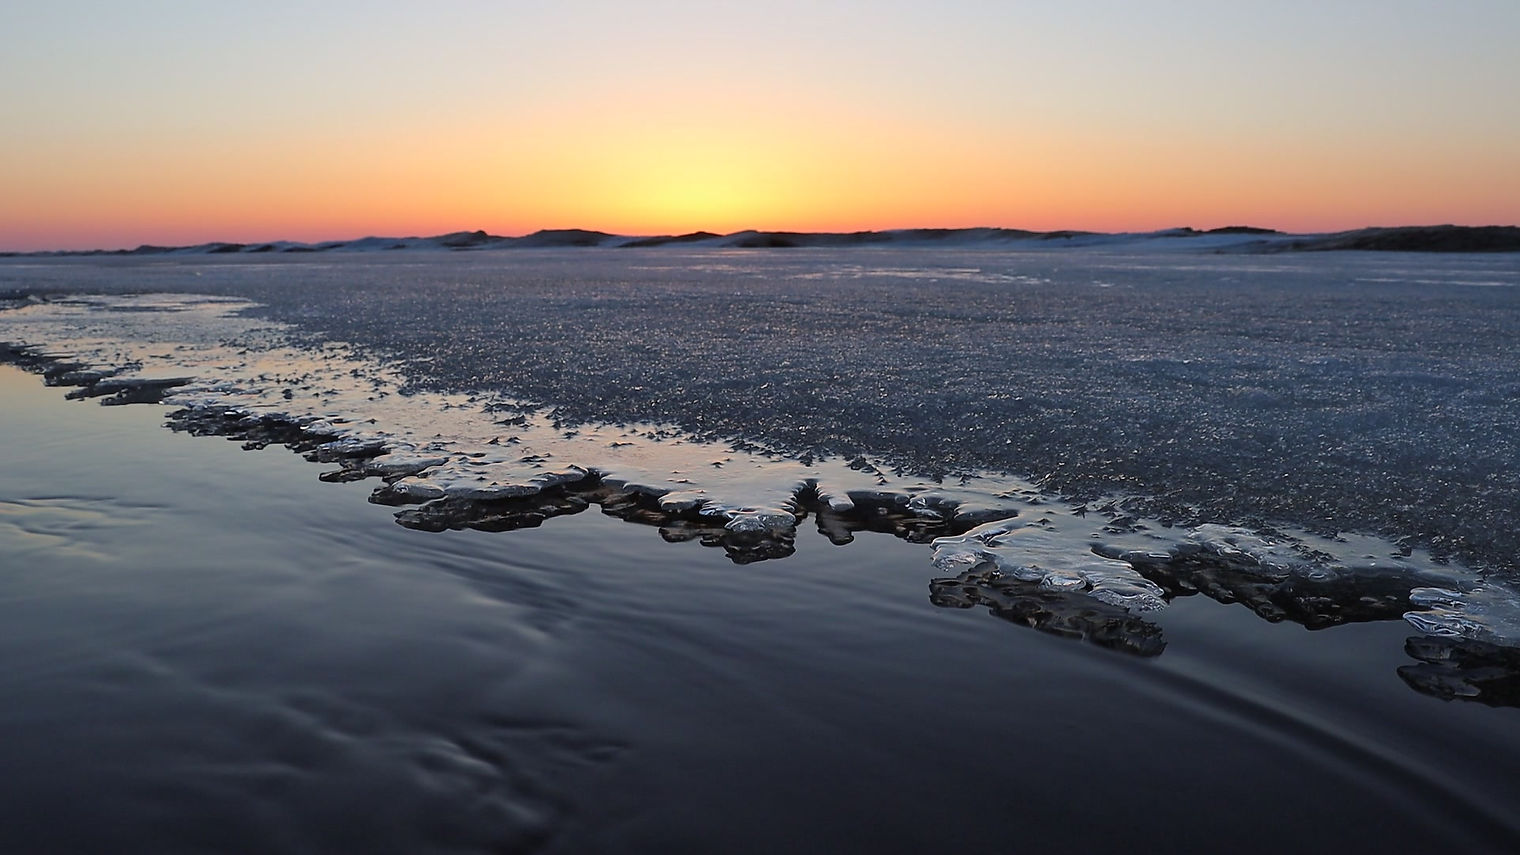 Sunrise on Lake Superior's Whitefish Bay - March 21, 2021